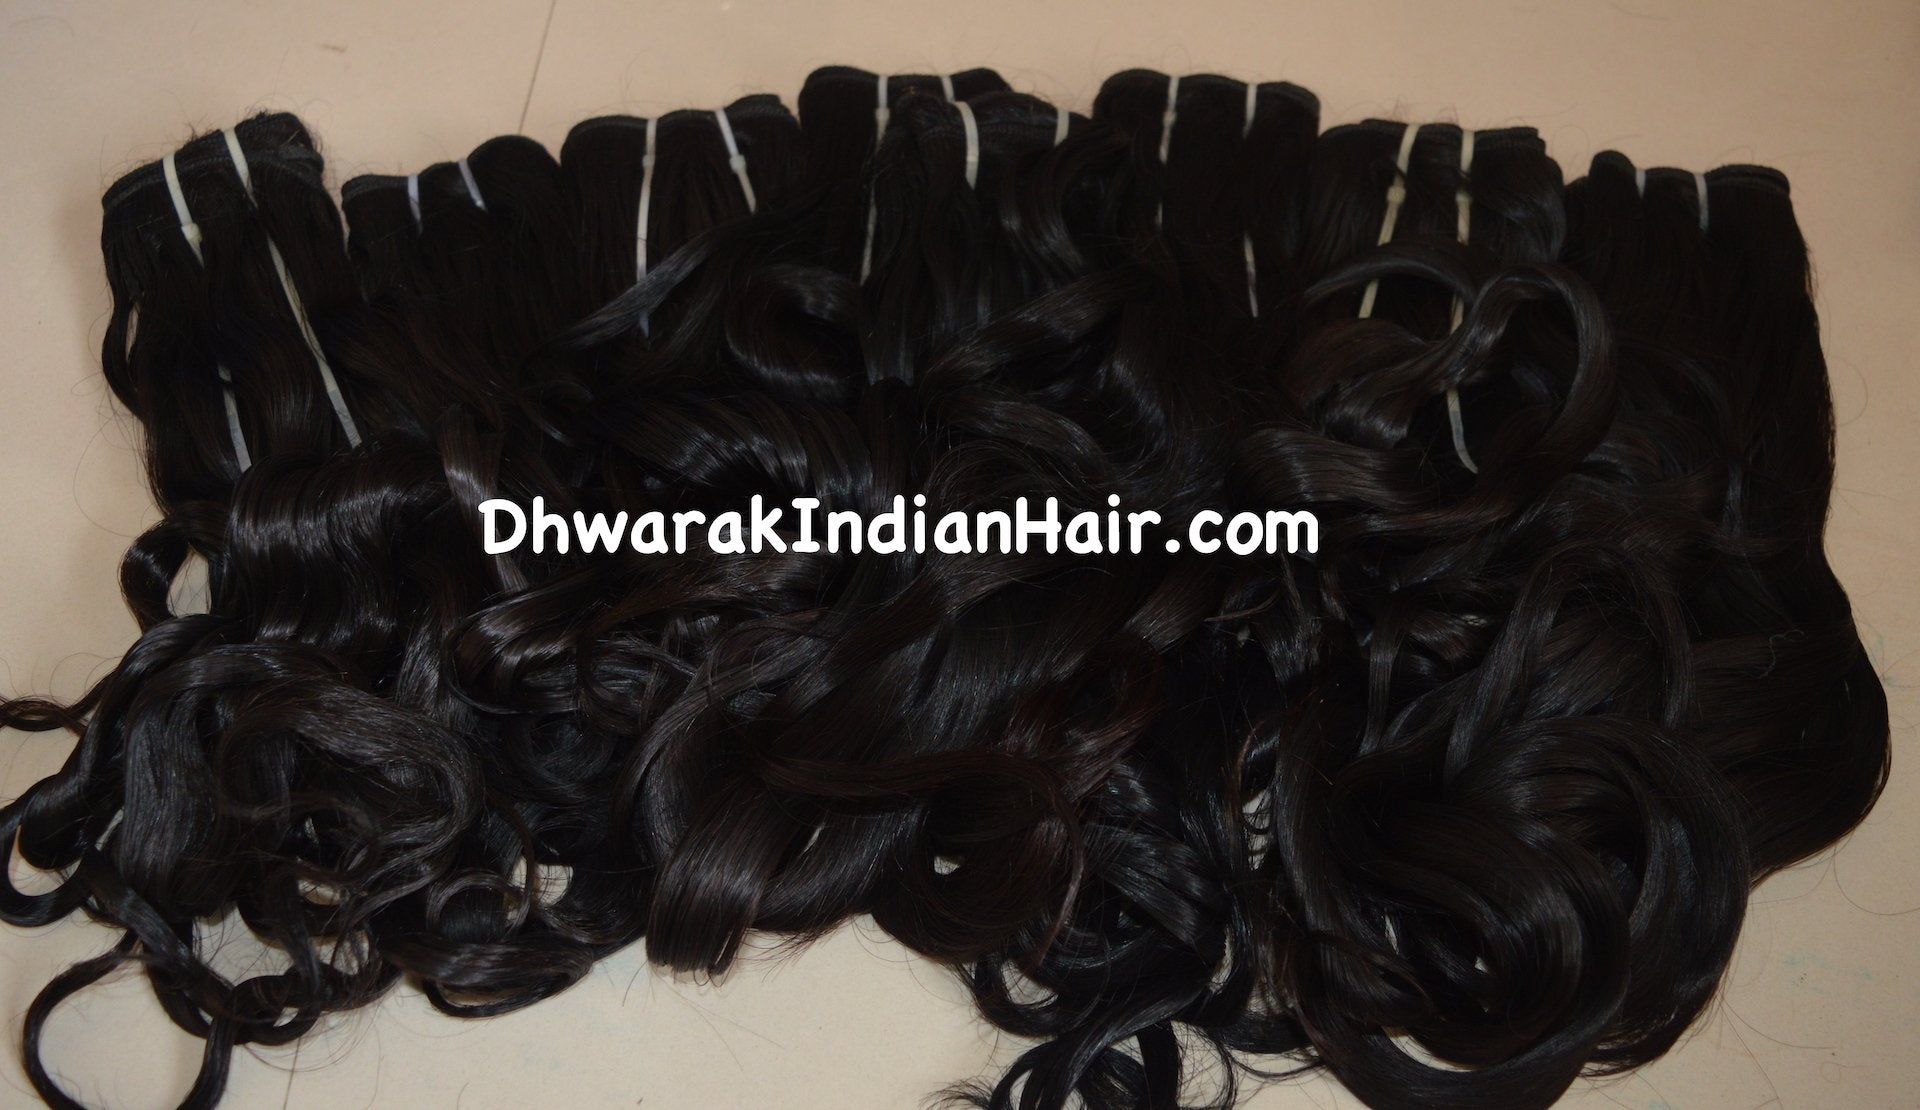 Raw hair weaves Indian hair weaves Indian hair bundles 